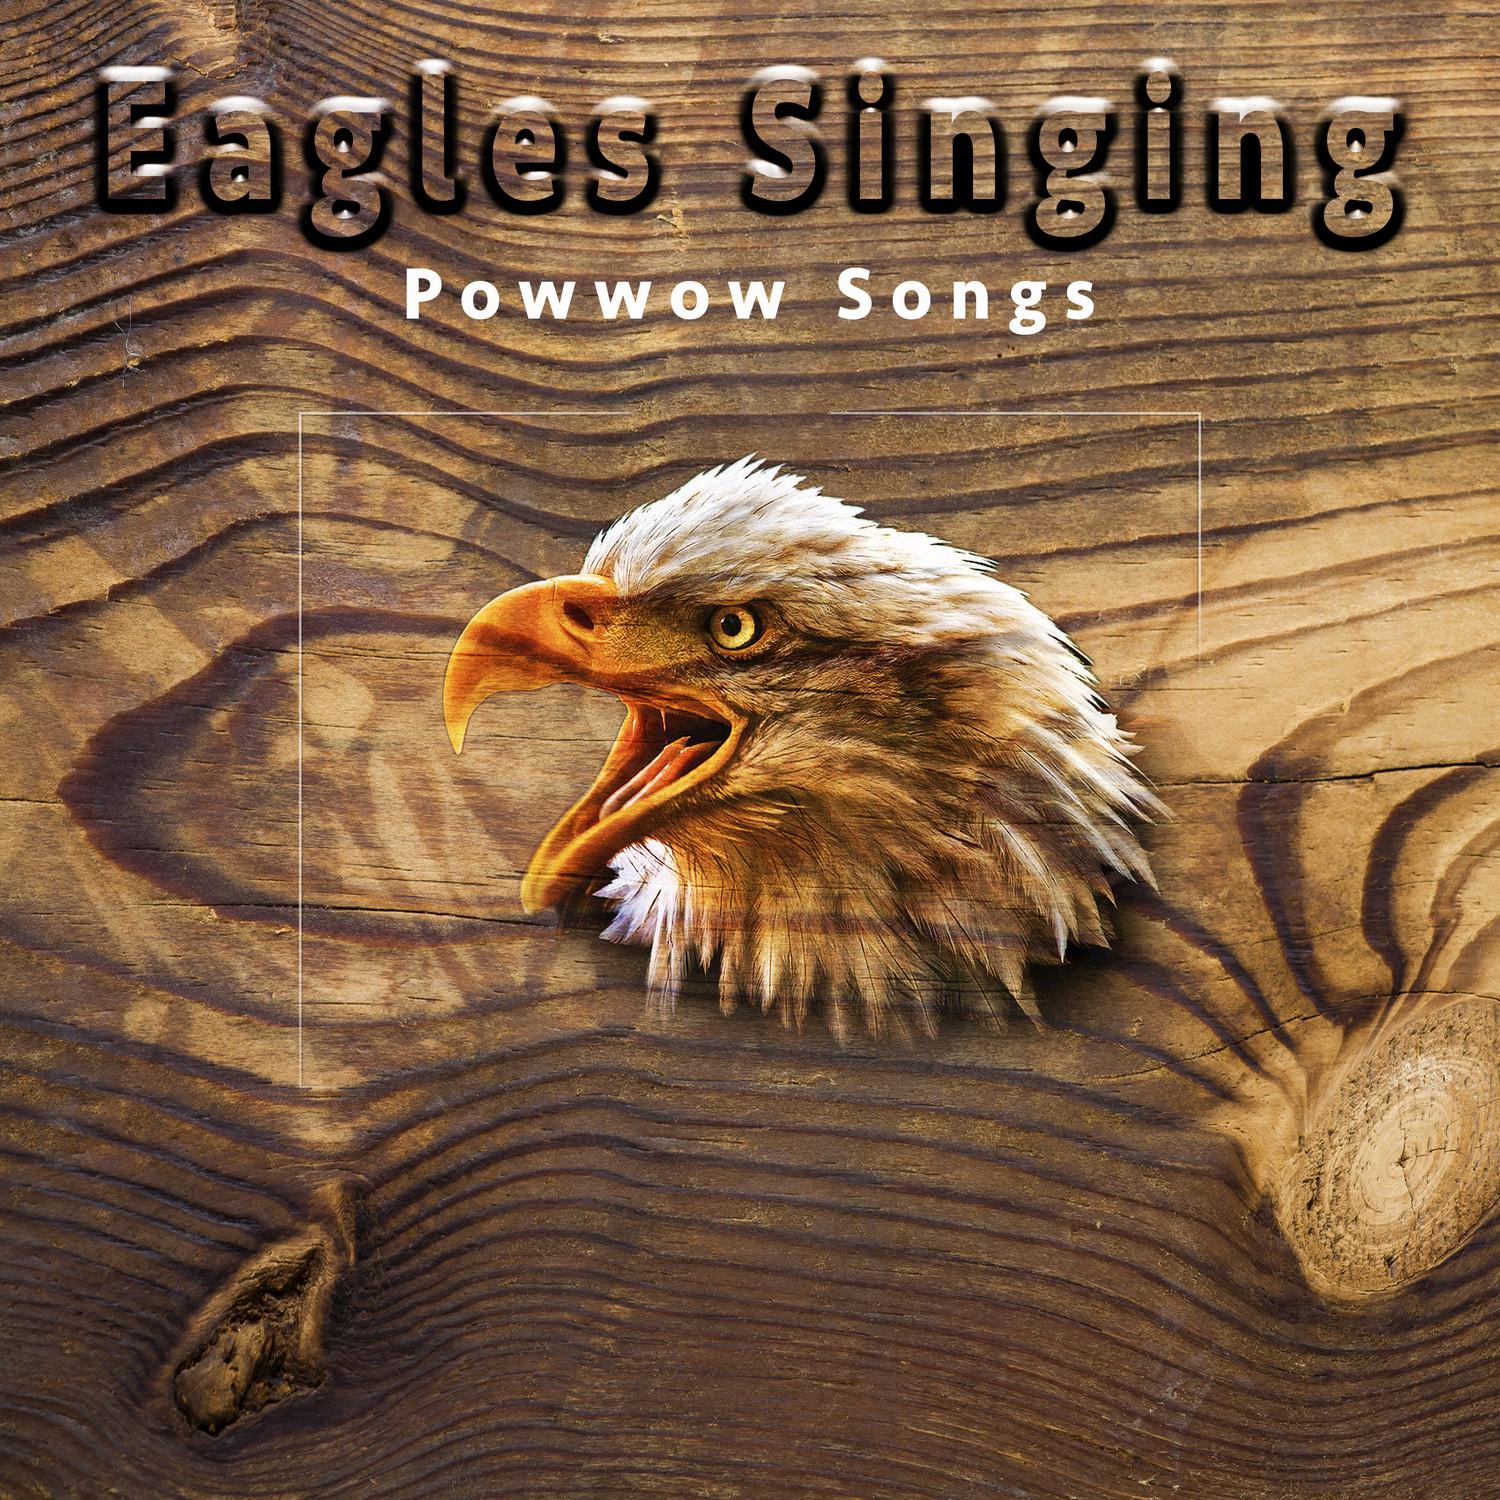 Eagles Singing: Powwow Songs